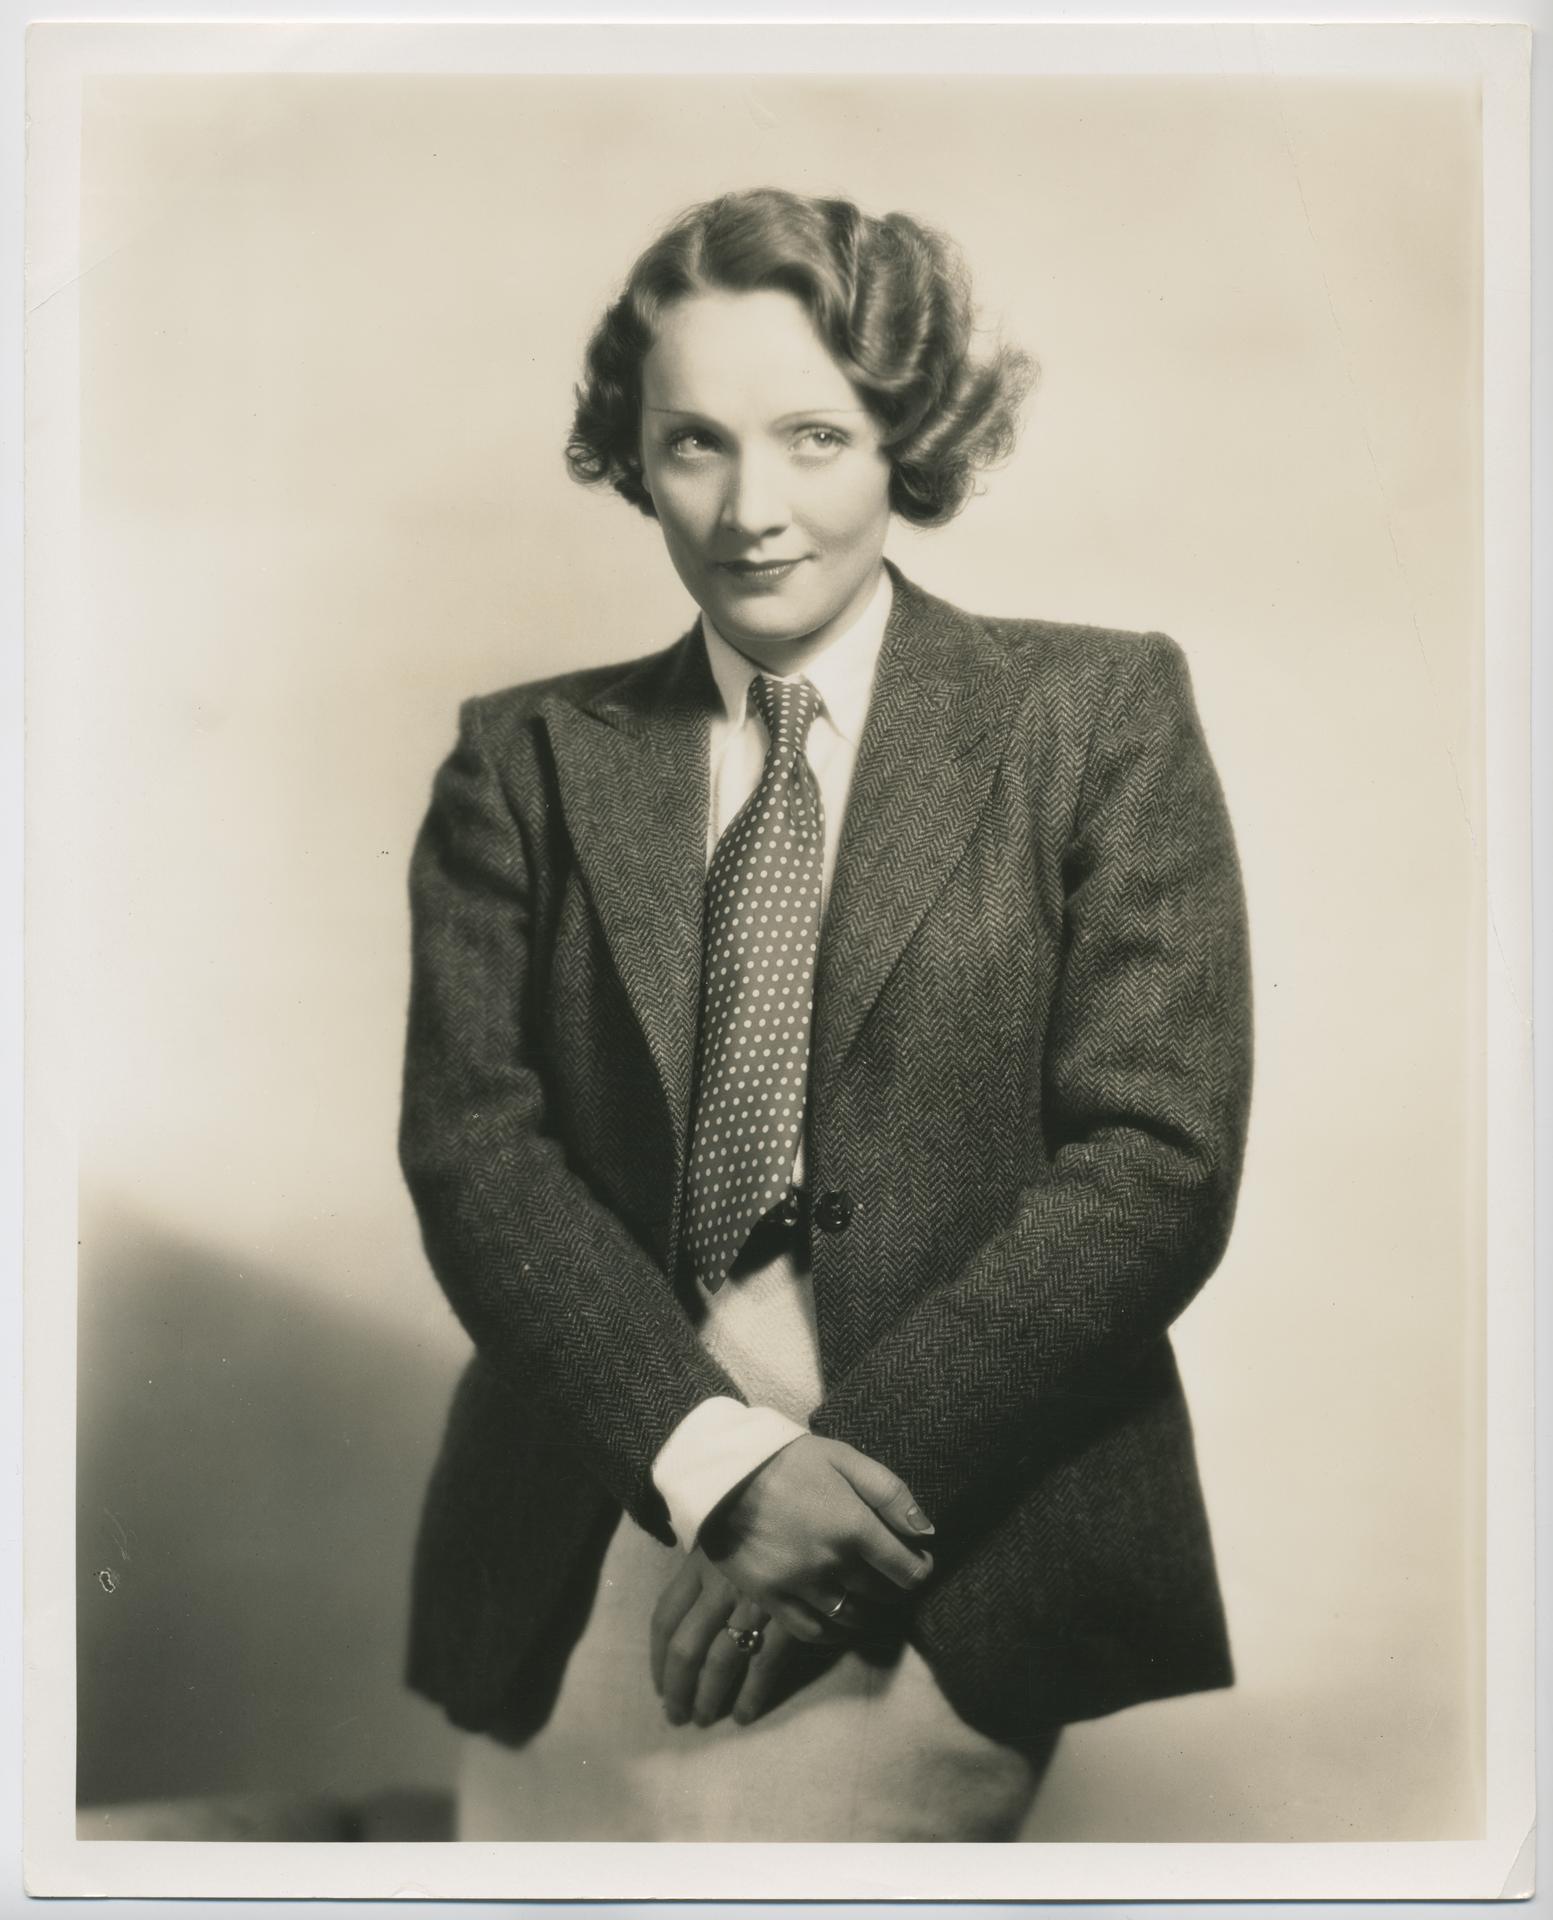 marlene dietrich dress 1930